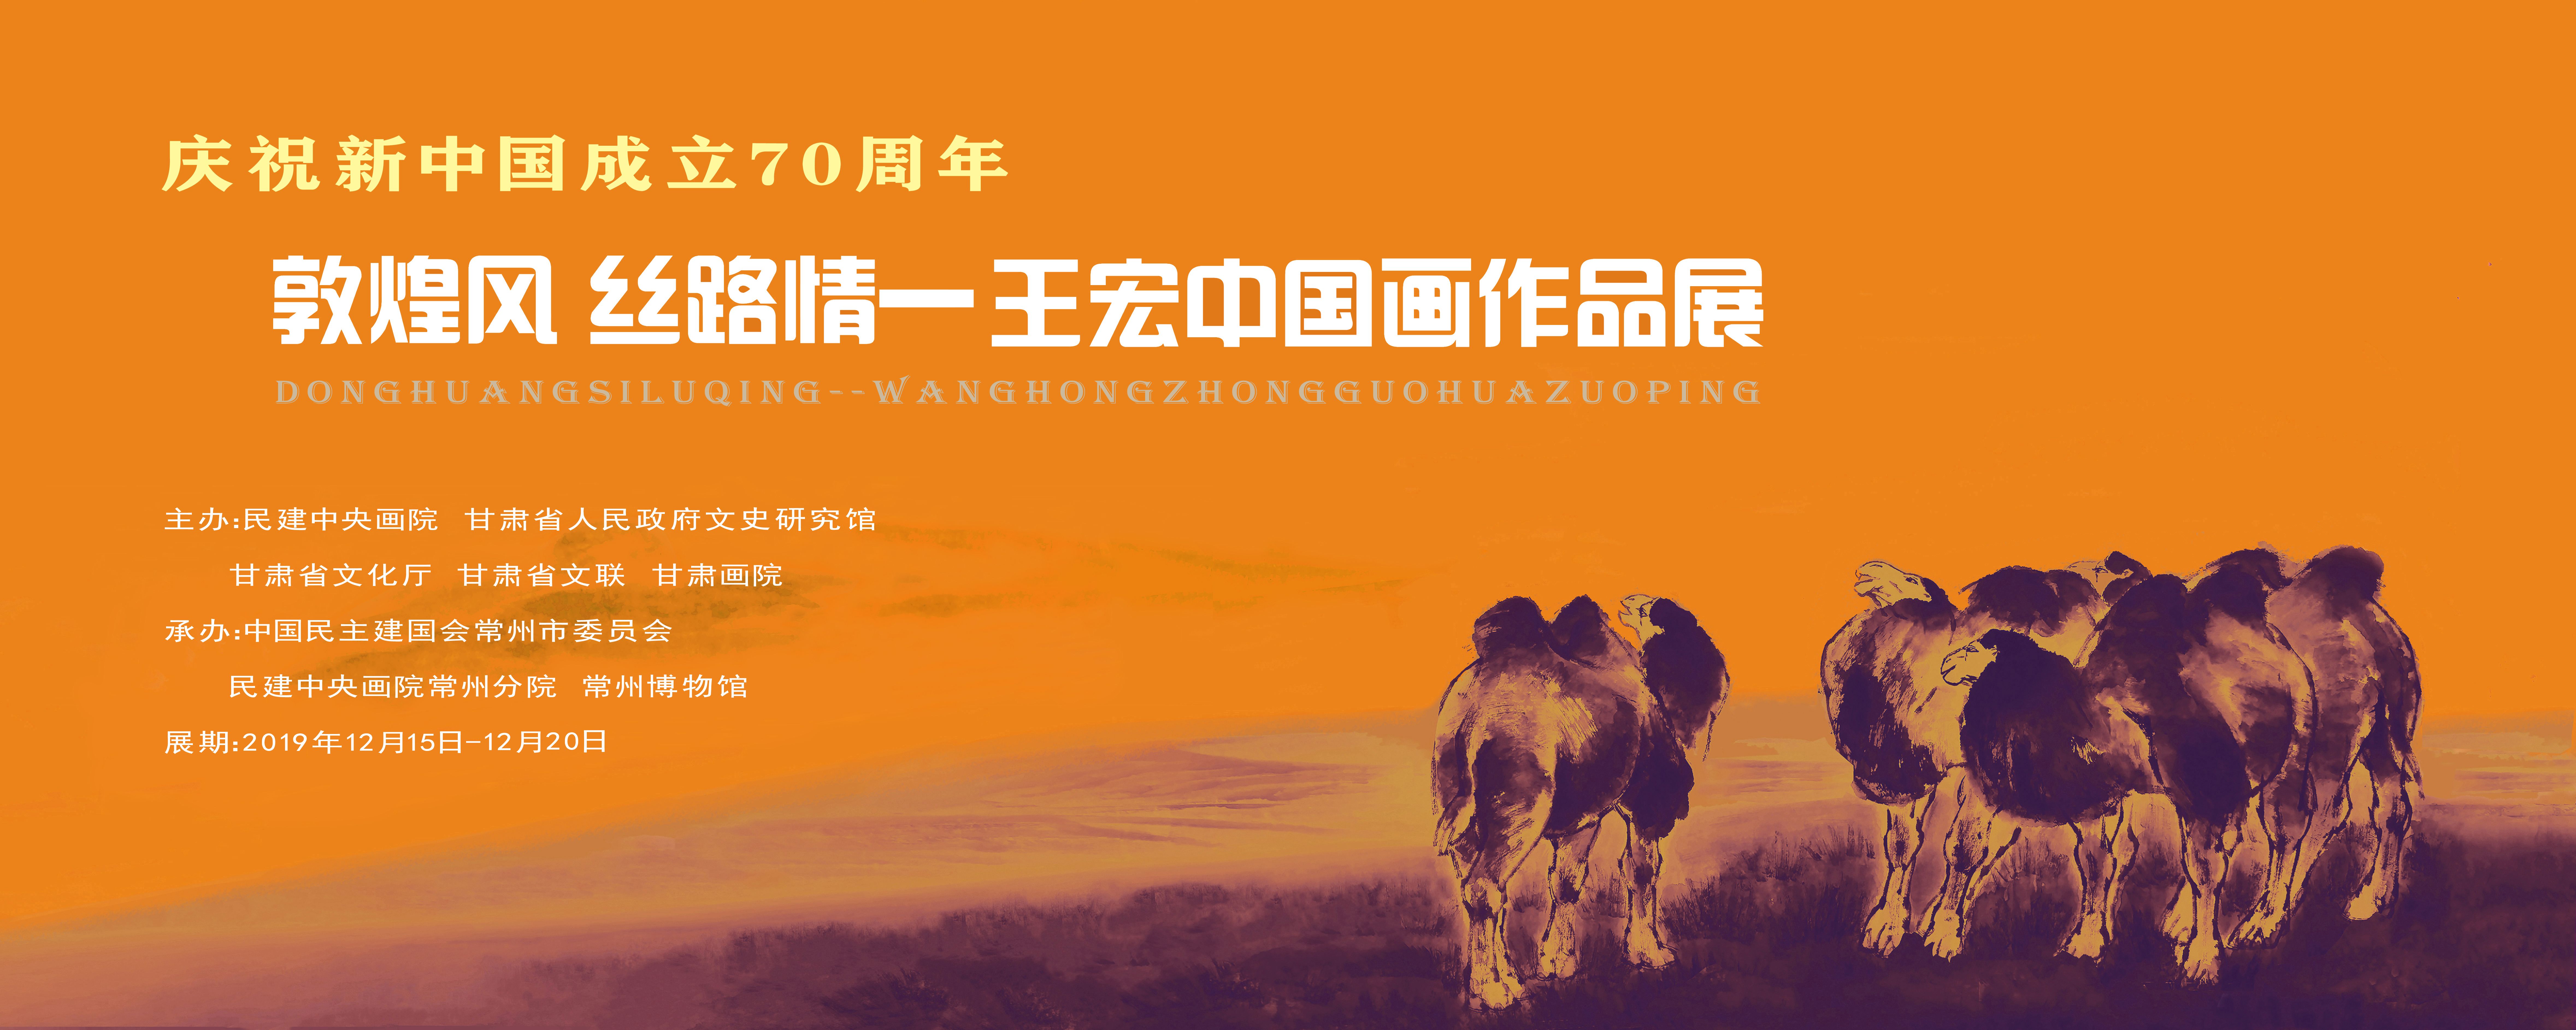 庆祝新中国成立70周年“敦煌风 丝路情”王宏中国画作品展